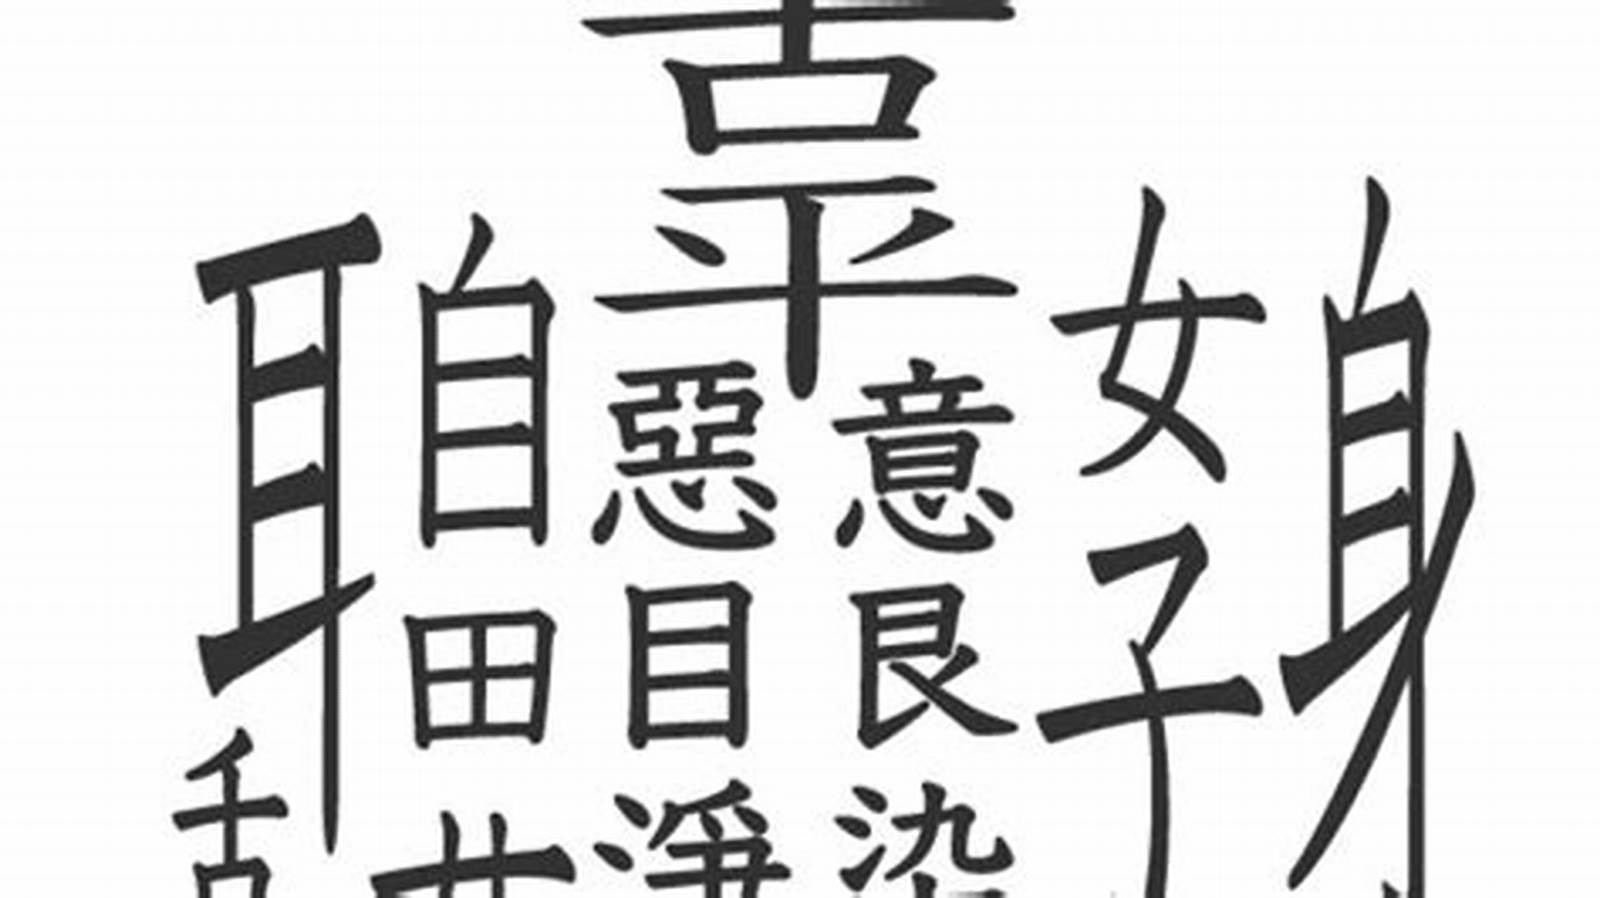 Membaca dan Menulis Karakter Kanji Tersulit